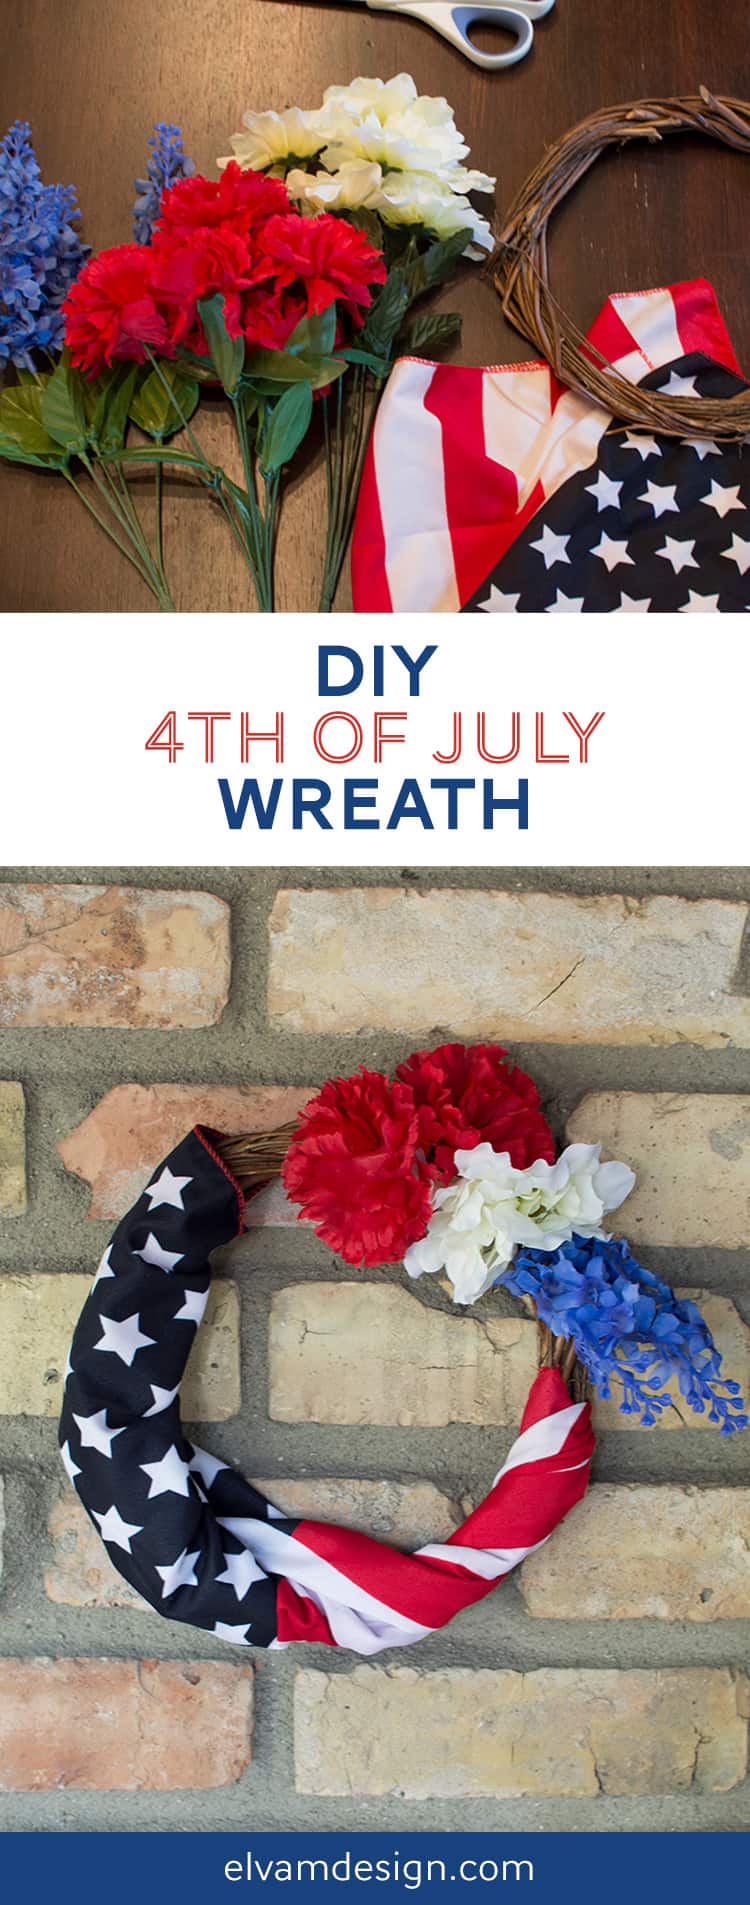 DIY 4th of July Wreath Tutorial from Elvamdesign.com